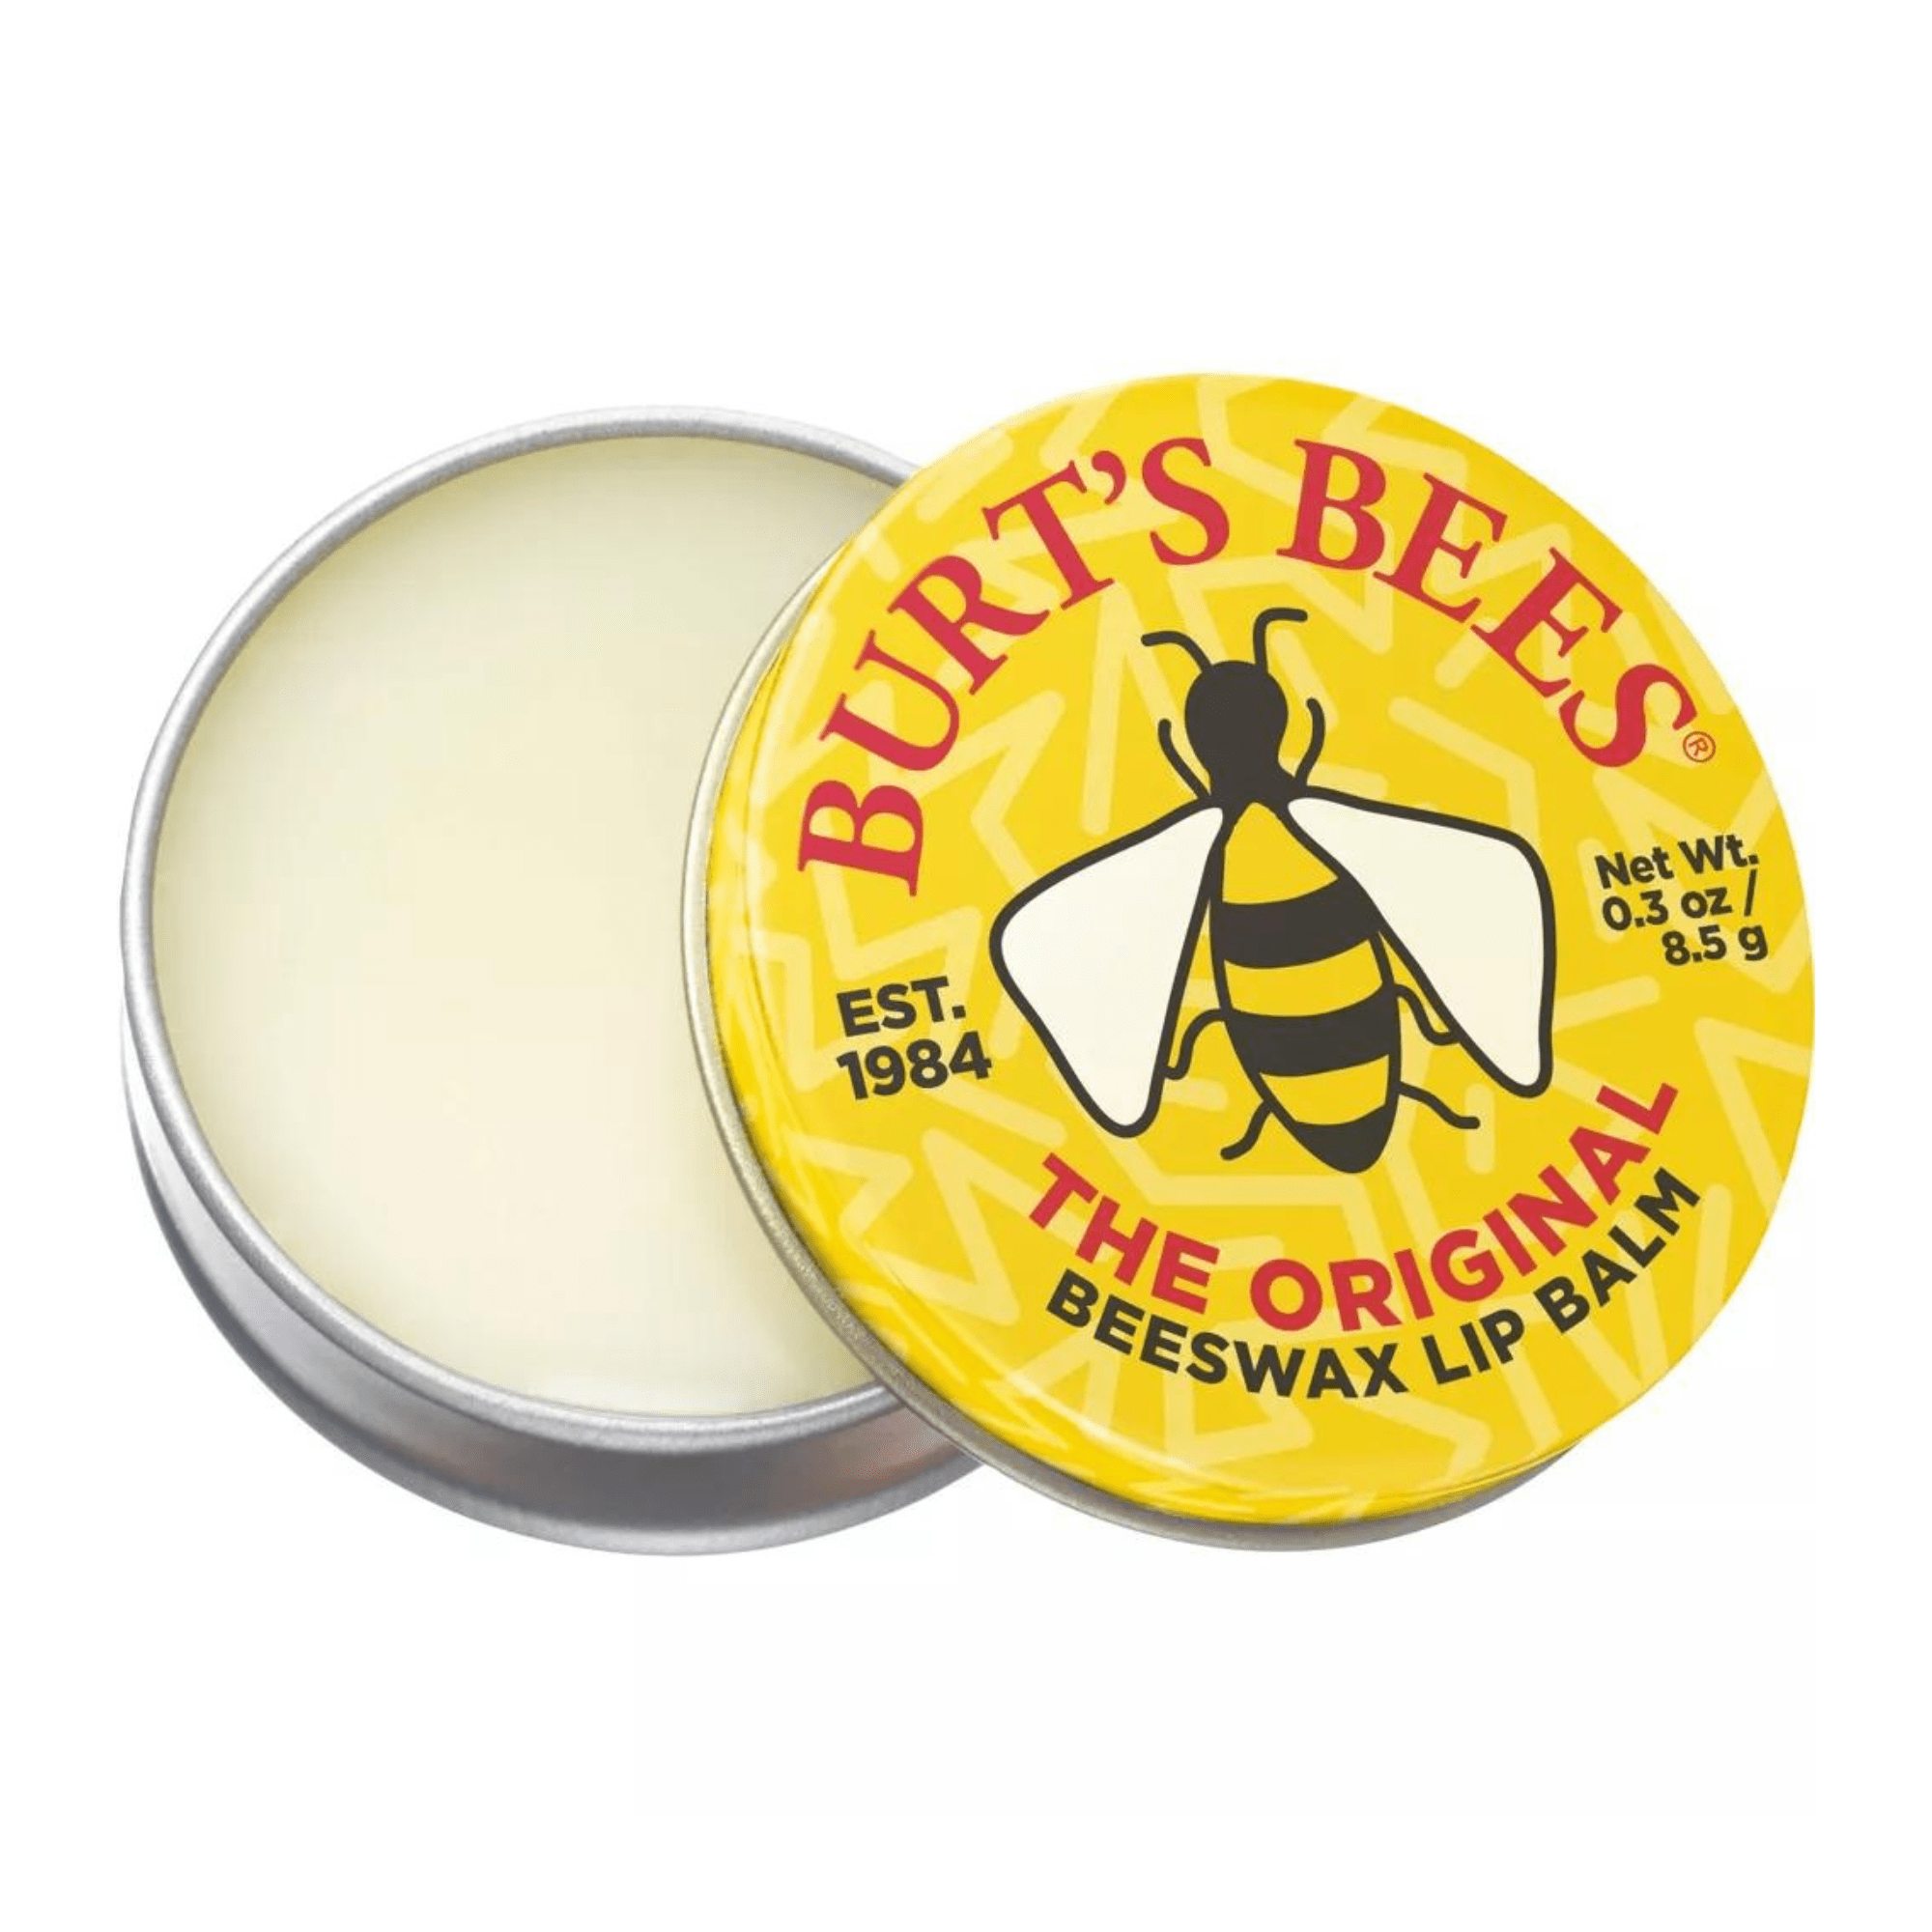 Burt's Bees - Honey Lip Balm Twinpack •